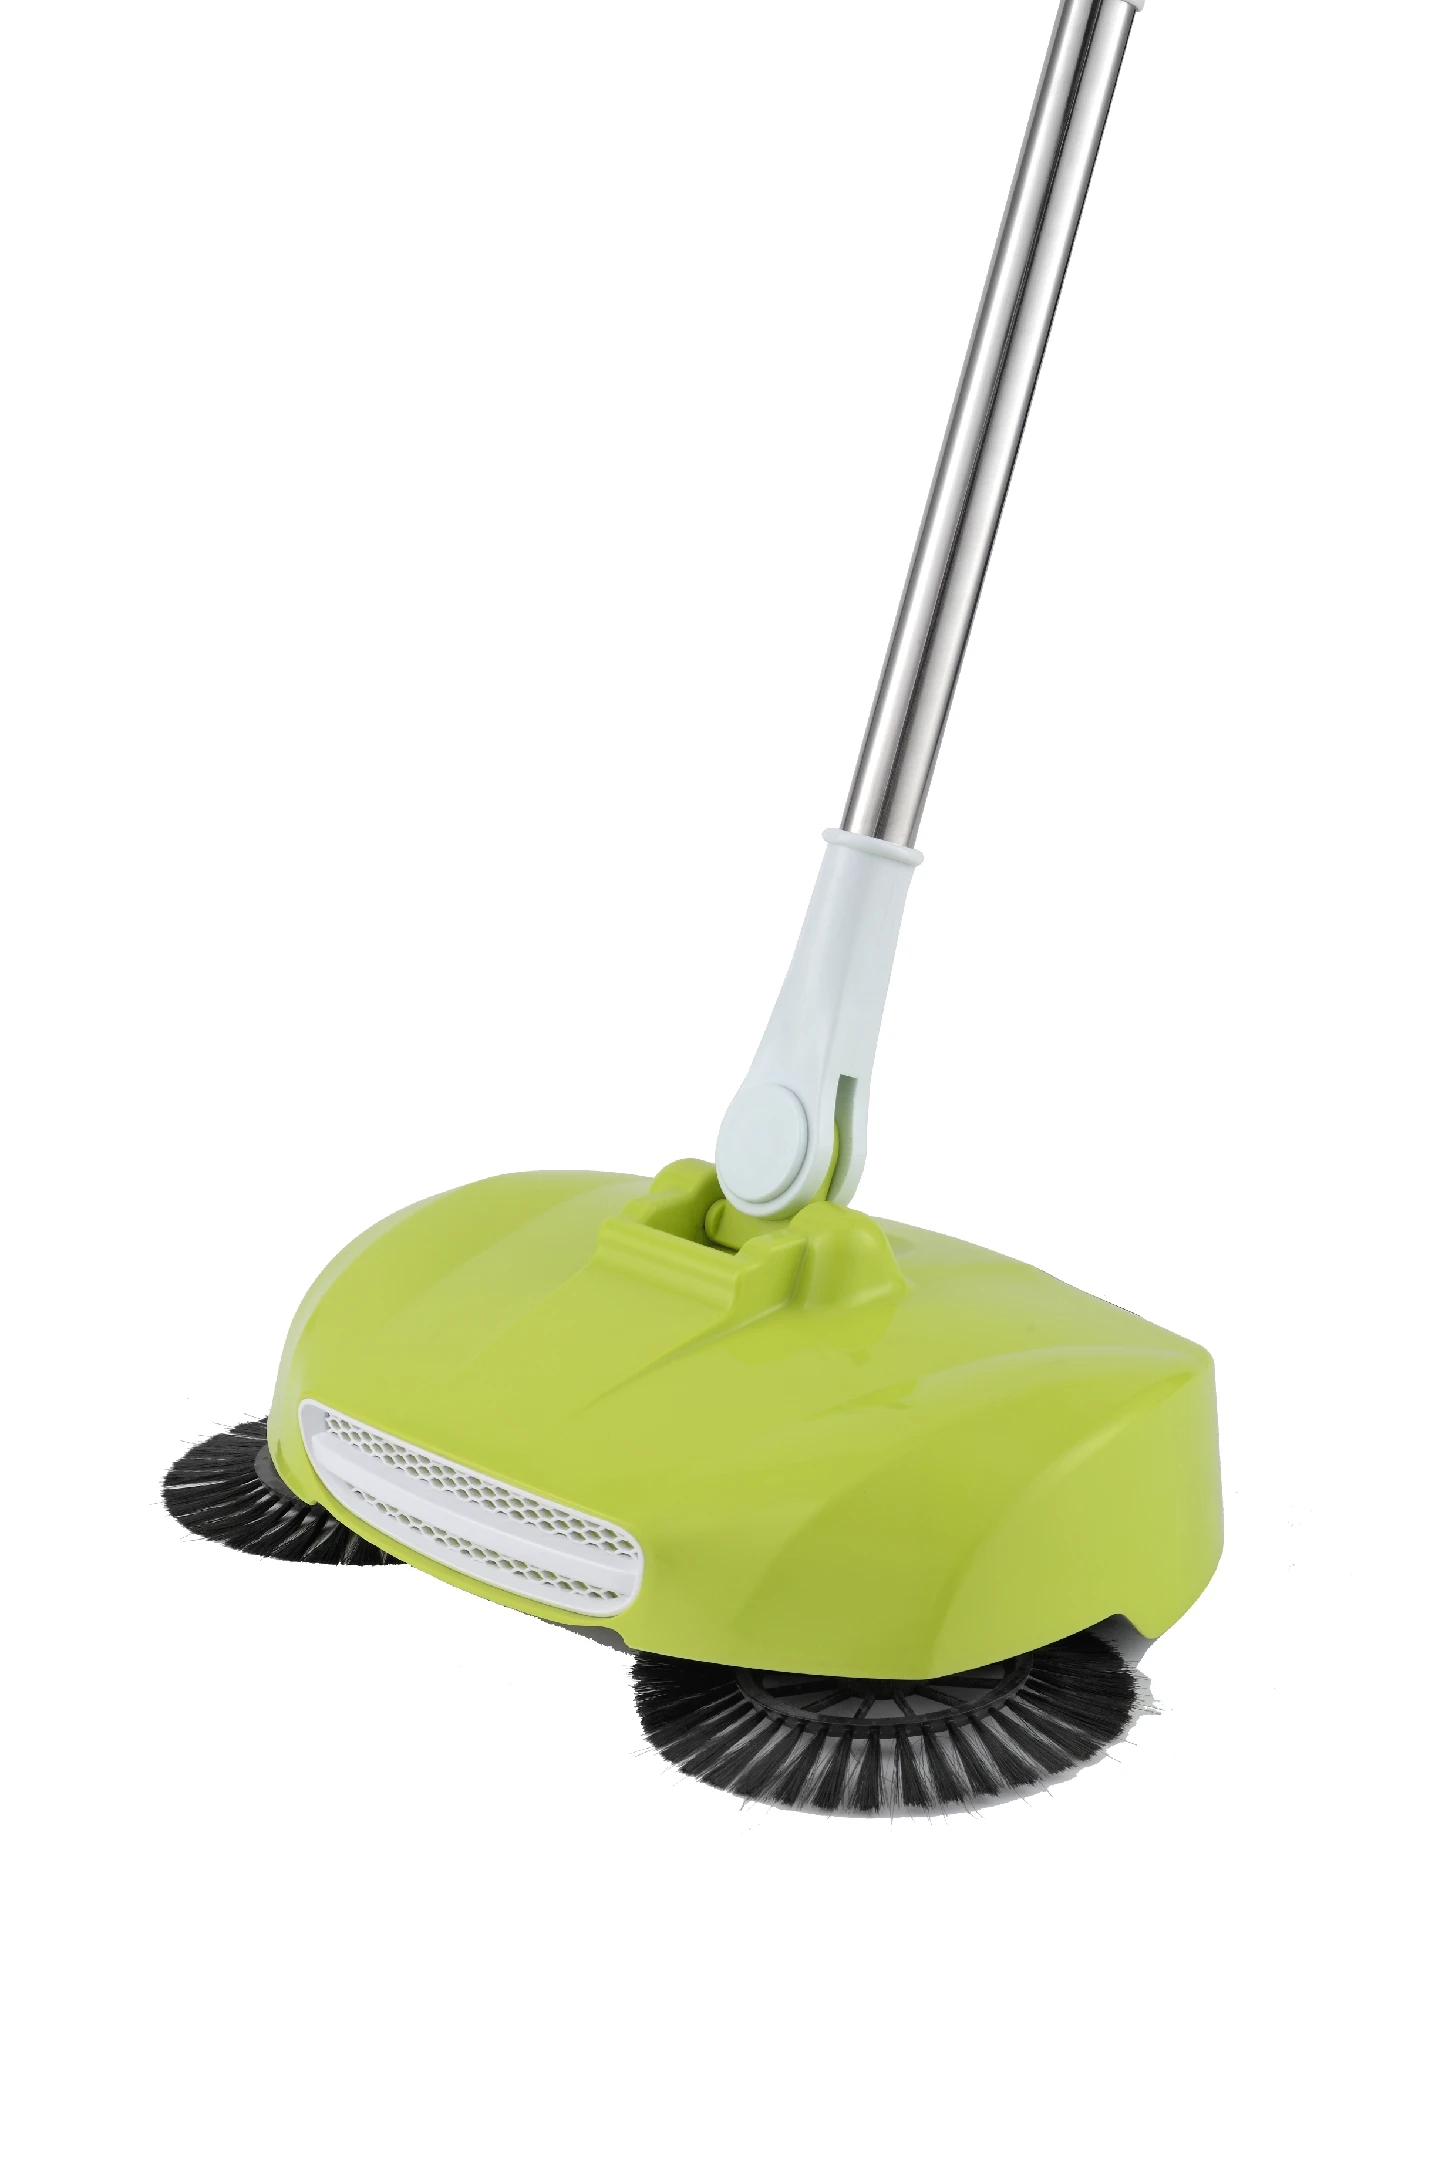 
Multifunction Household Spin Broom Manual Floor Sweeper 